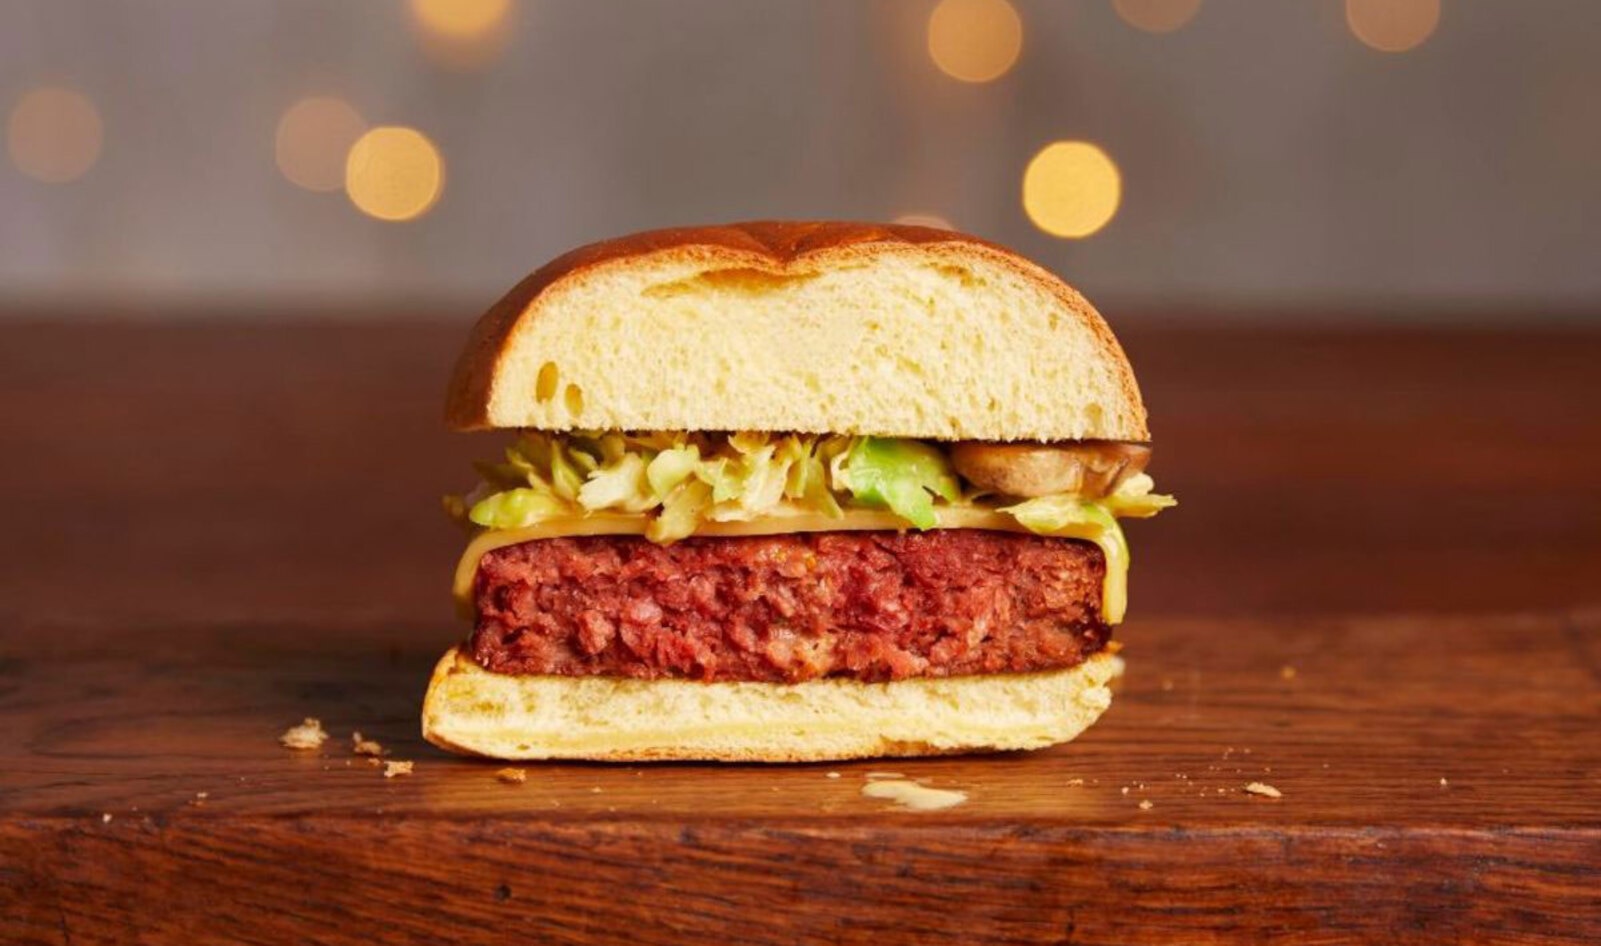 UK’s Largest Meal Kit Service Adds Vegan Christmas Burger to Menu